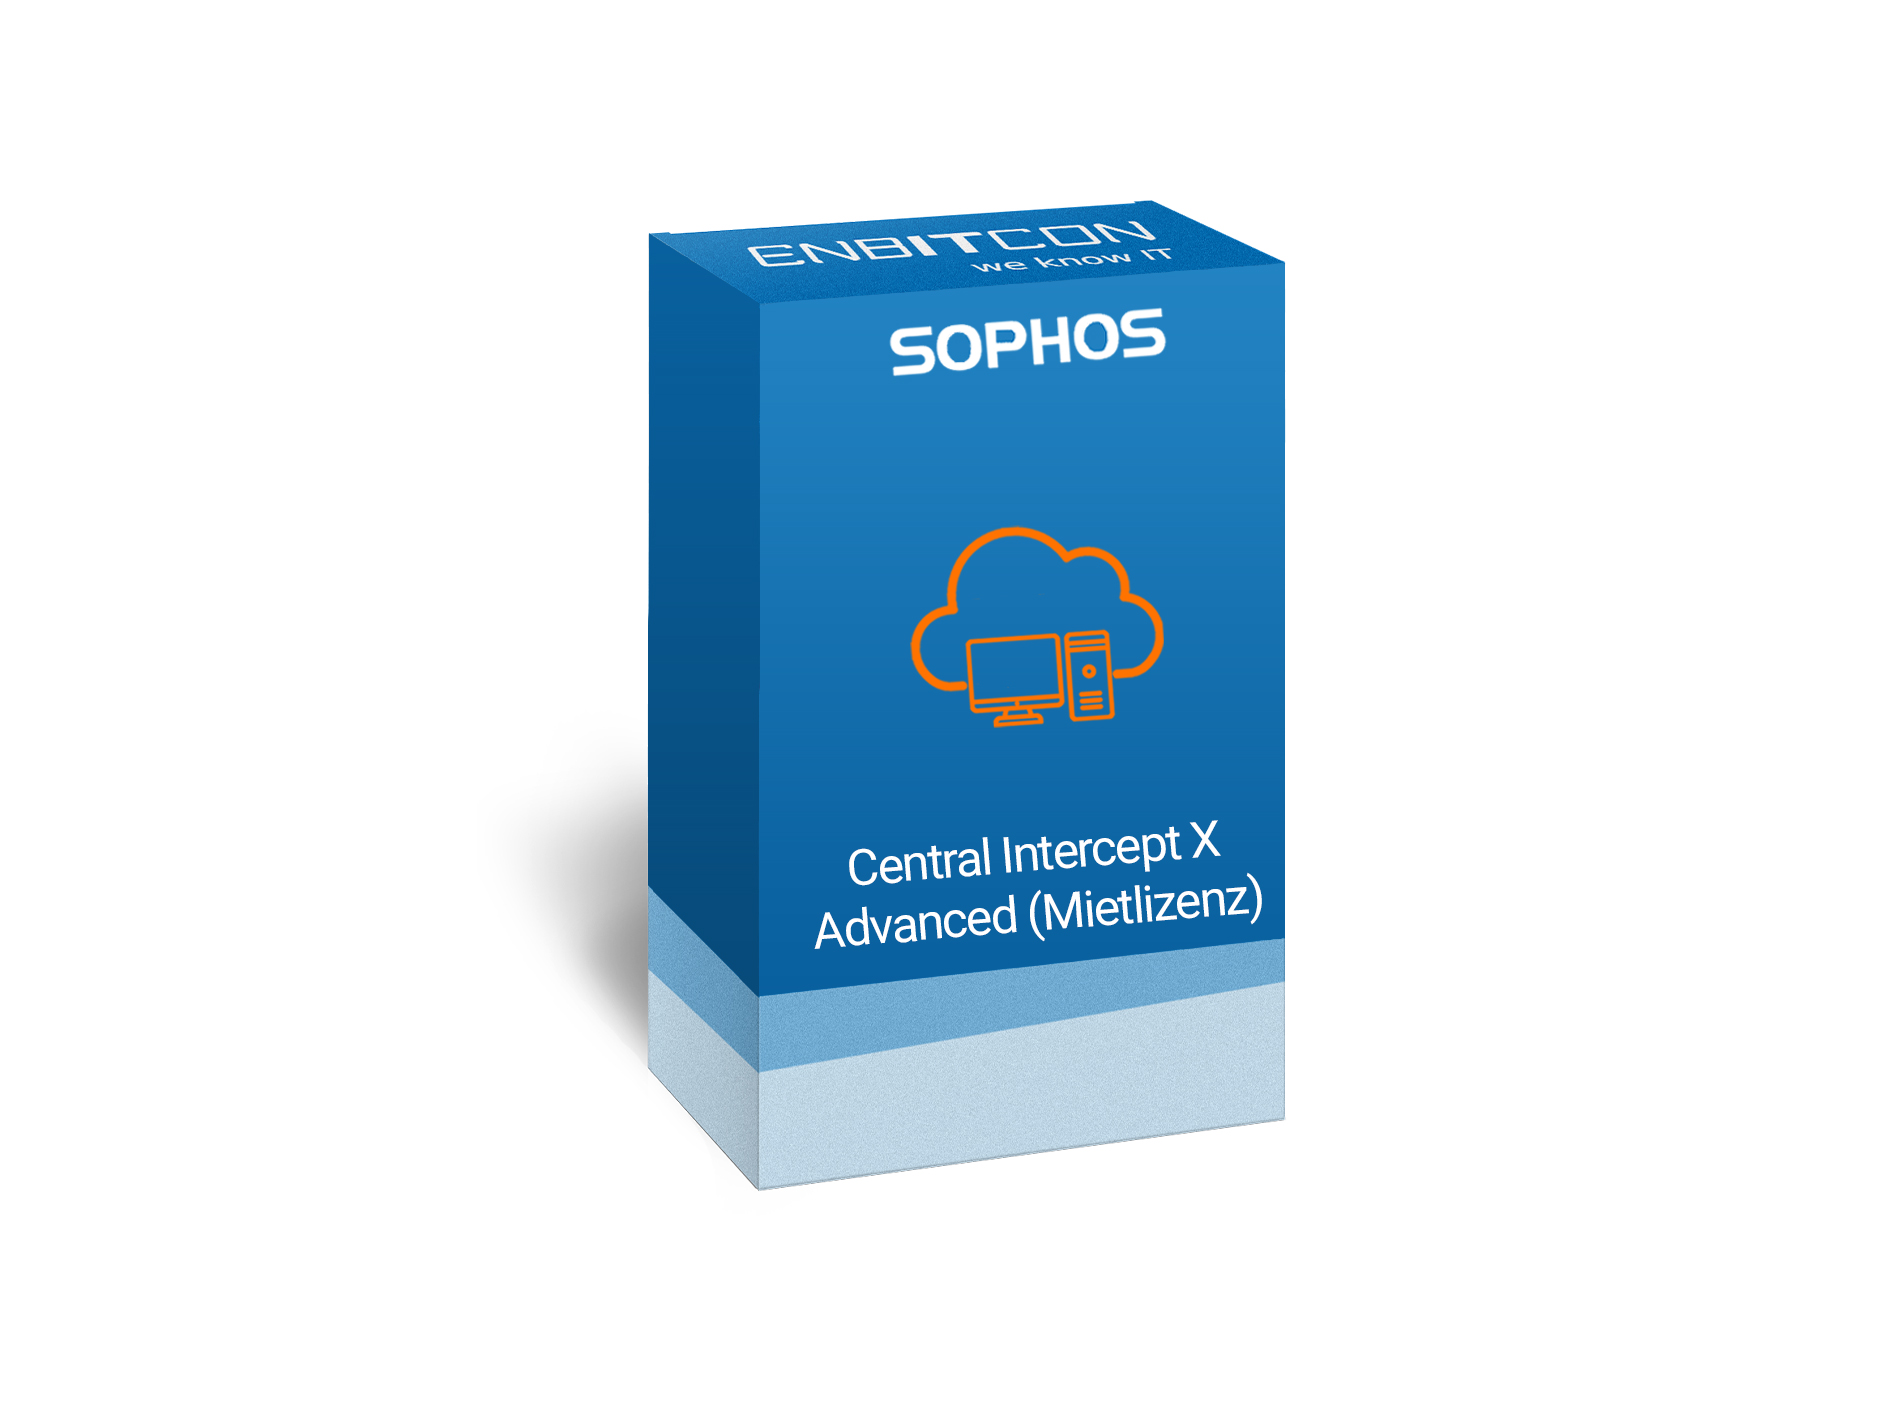 Sophos Miet-Intercept X for Server Mietlizenz Vorschaubild bestehend aus einem blauen Schild, indem sich orangene Server befinden